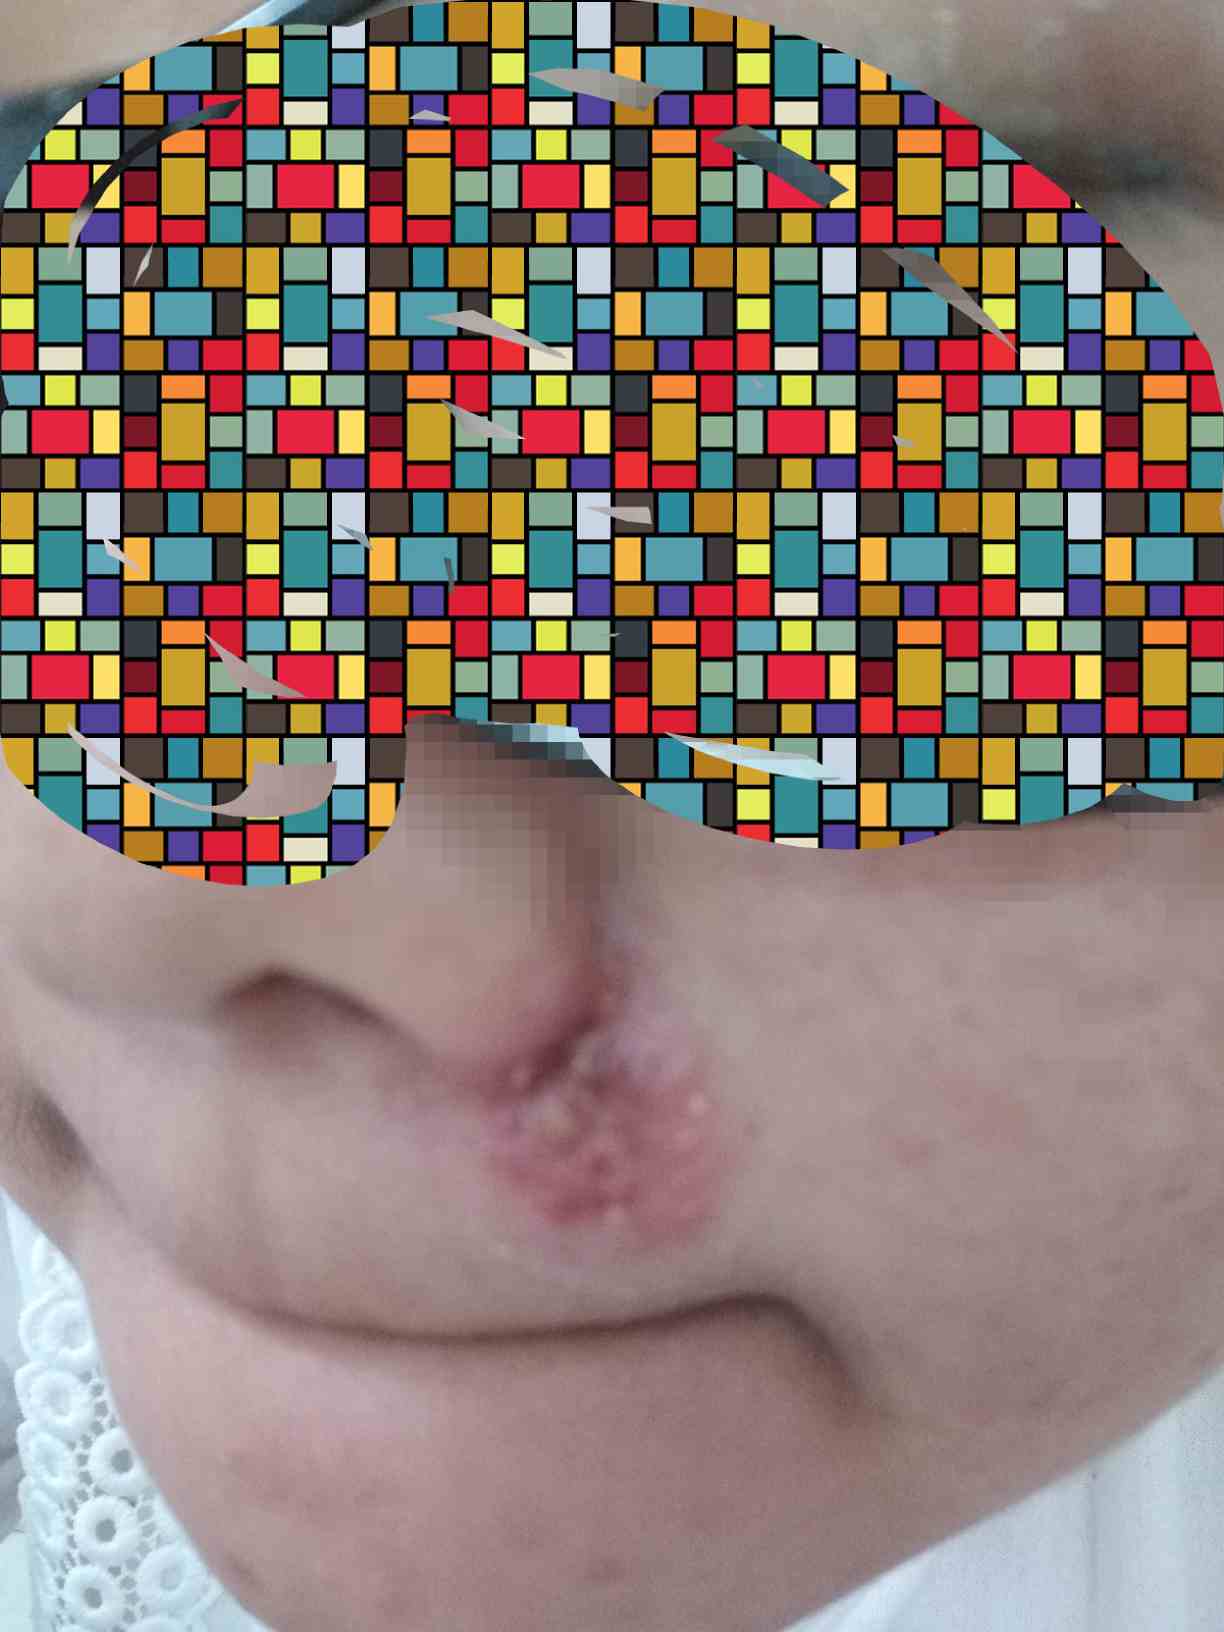 鼻子口疱疹的症状图片图片